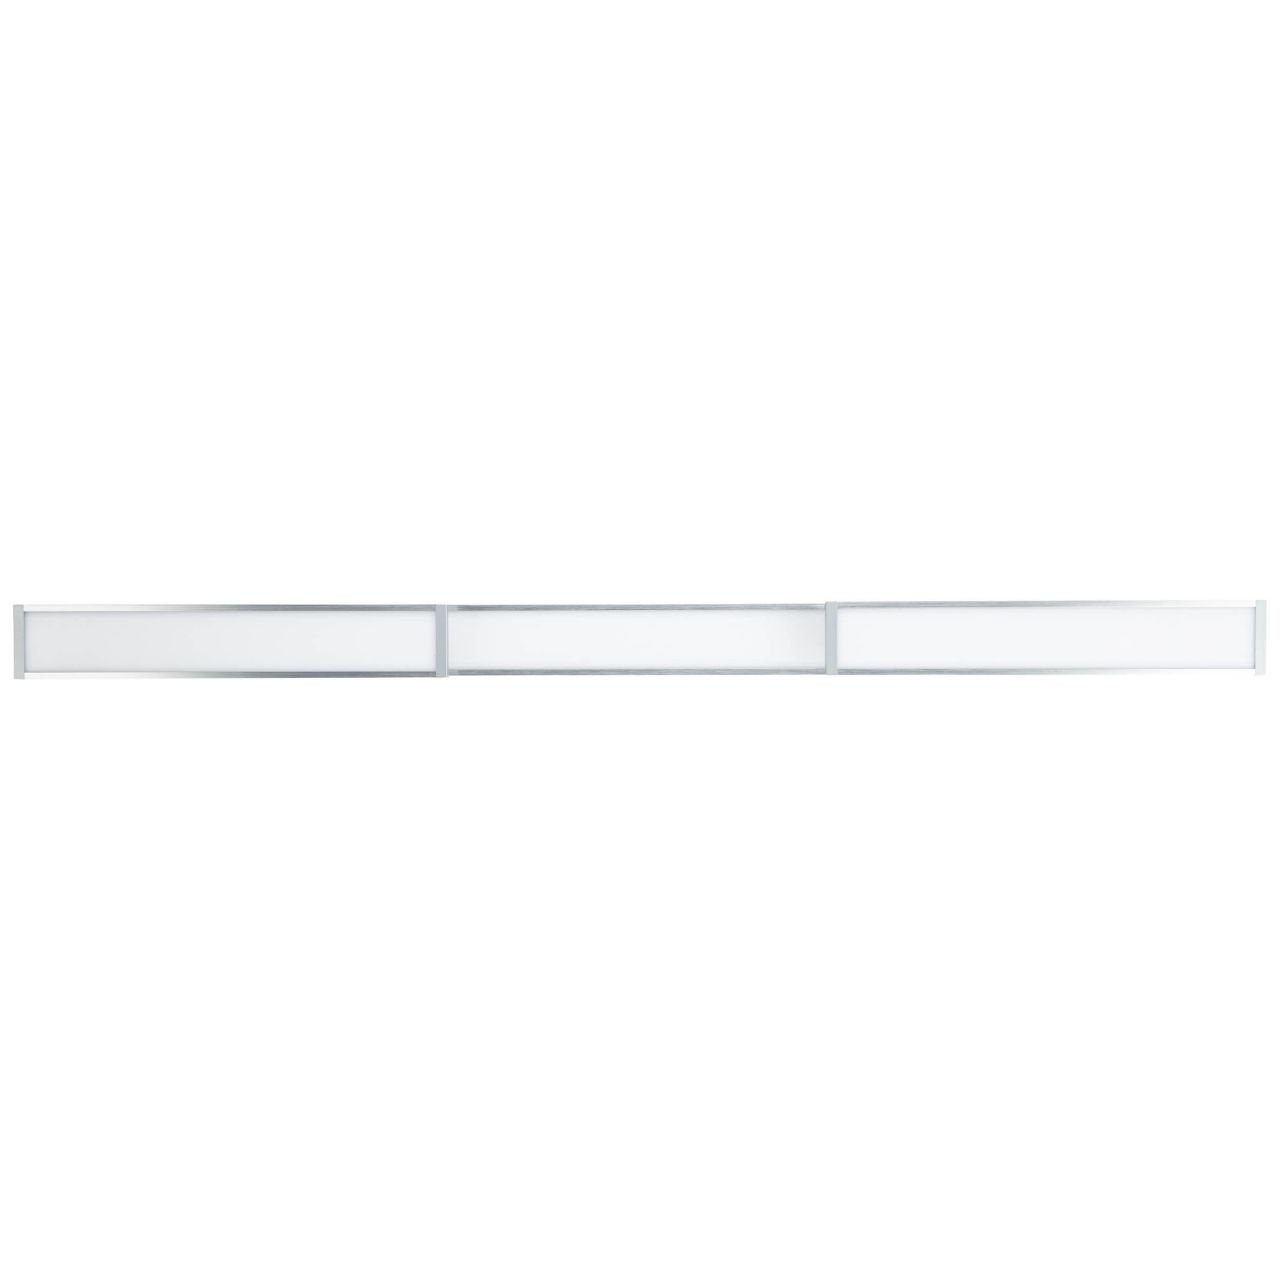 Brilliant Aufbauleuchte alu/weiß 116x7cm 1x Entrance LED Deckenaufbau-Paneel Lampe easyDim 3 3000K, Entrance